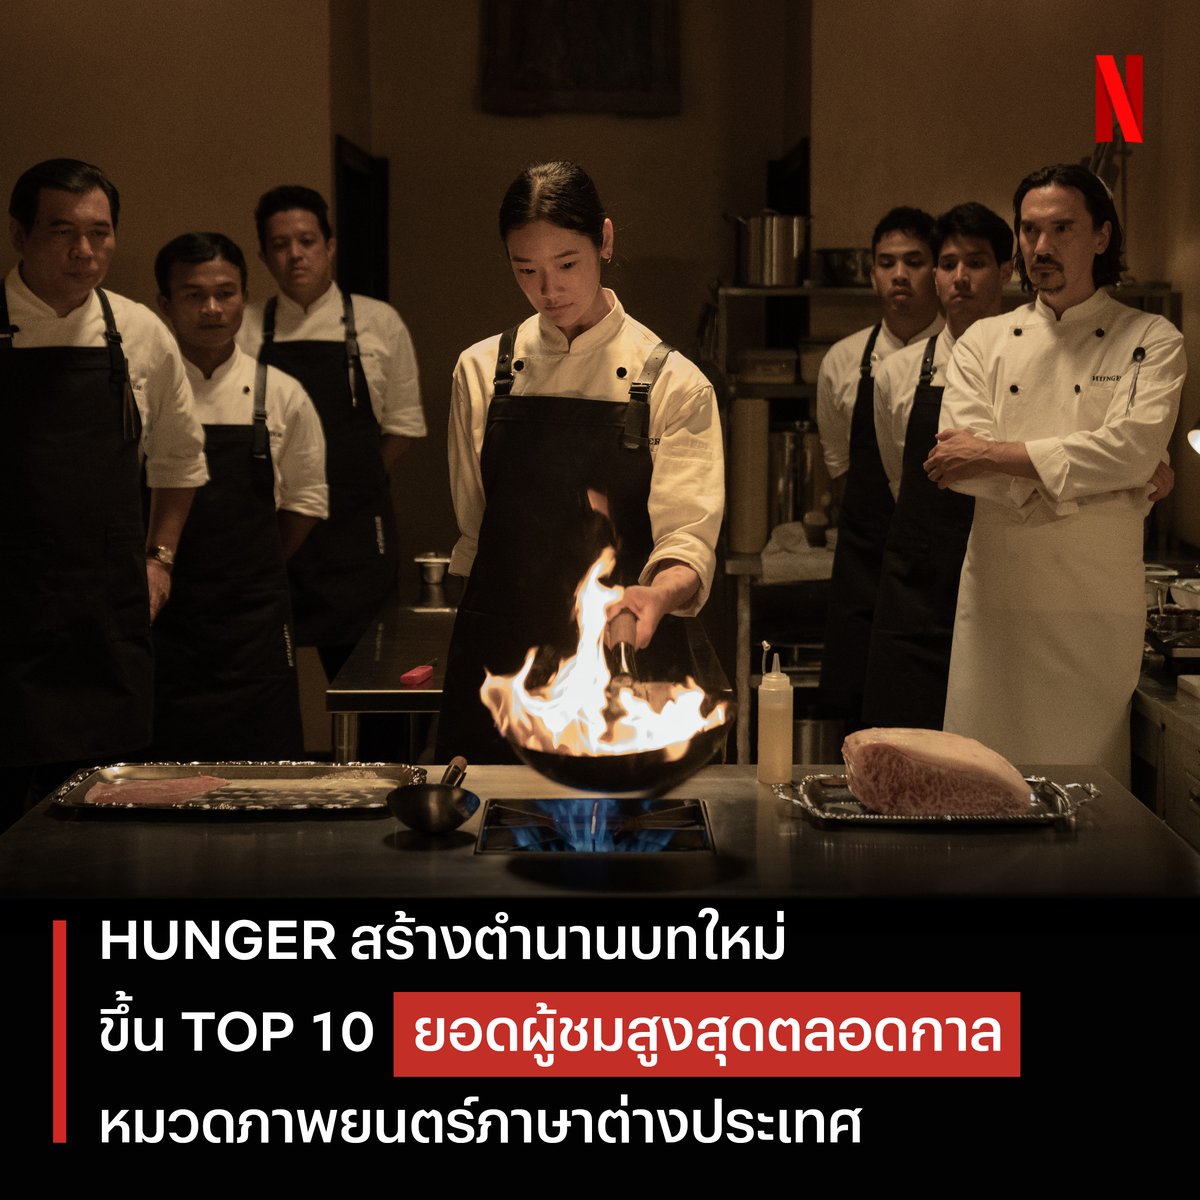 ความเดือดหนังไทย ได้สร้างตำนานแล้ว 🔥
‘HUNGER คนหิวเกมกระหาย’ ทะยานติดอันดับ TOP10 ภาพยนตร์ภาษาต่างประเทศ ที่ยอดผู้ชมสูงสุดตลอดกาลของ Netflix ทั่วโลก

เราขอแสดงความยินดีกับทีมผู้สร้าง นักแสดง และเบื้องหลังทุกคนด้วยครับ :)

#HUNGERNetflix #คนหิวเกมกระหาย #NetflixTH